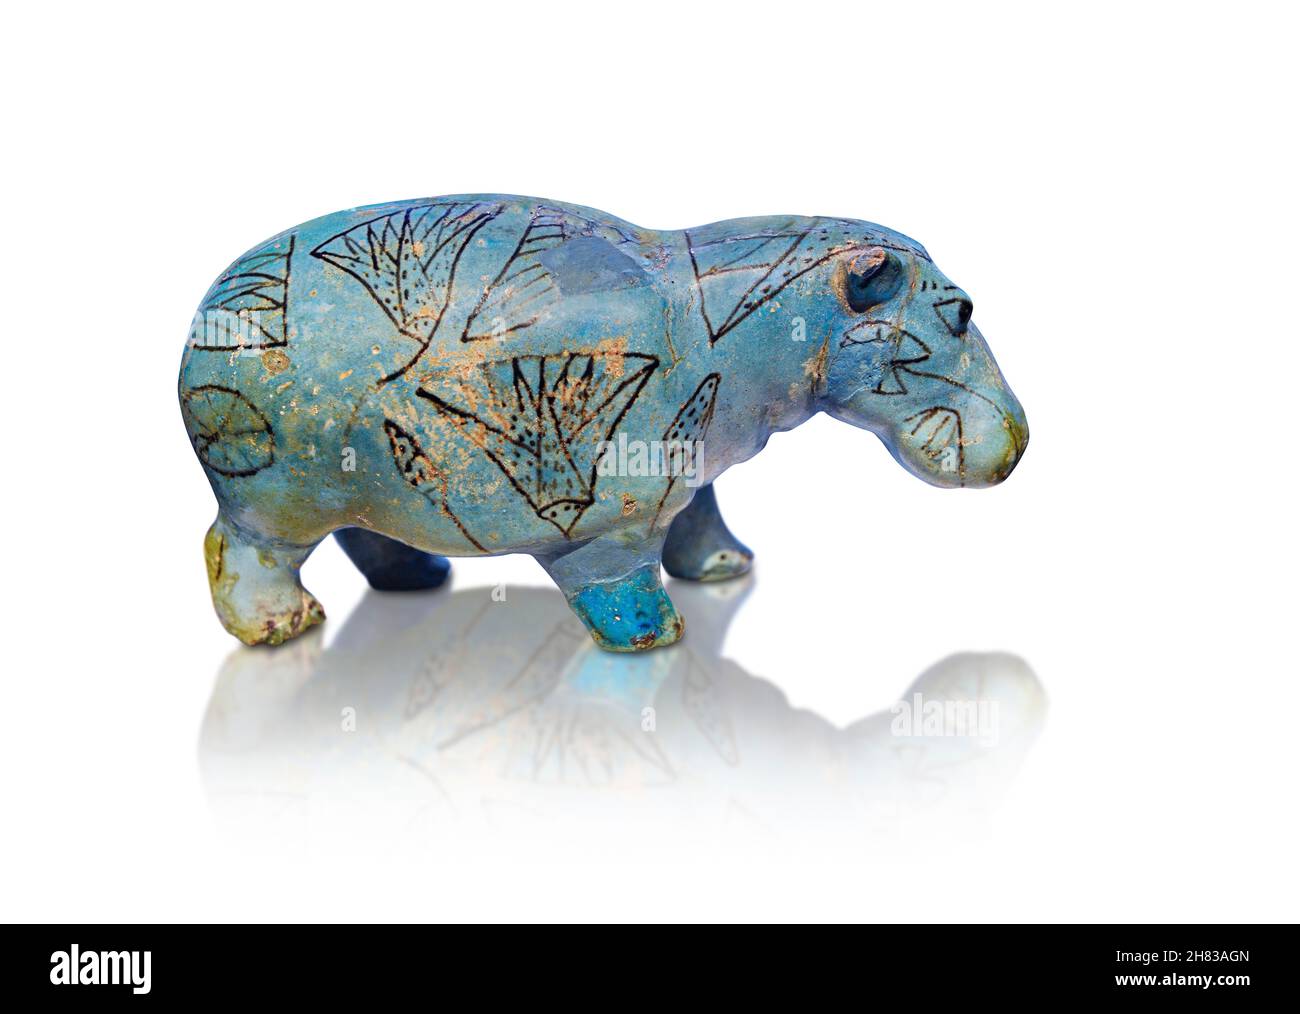 Ancinet ägyptische Fayencefigur eines Hippopotmus, 2000 - 1900 v. Chr., 11-12th Dynastie. Kunsthistorisches Museum Wien ALS 4211. Höhe 11cm. Dieser Typ Stockfoto